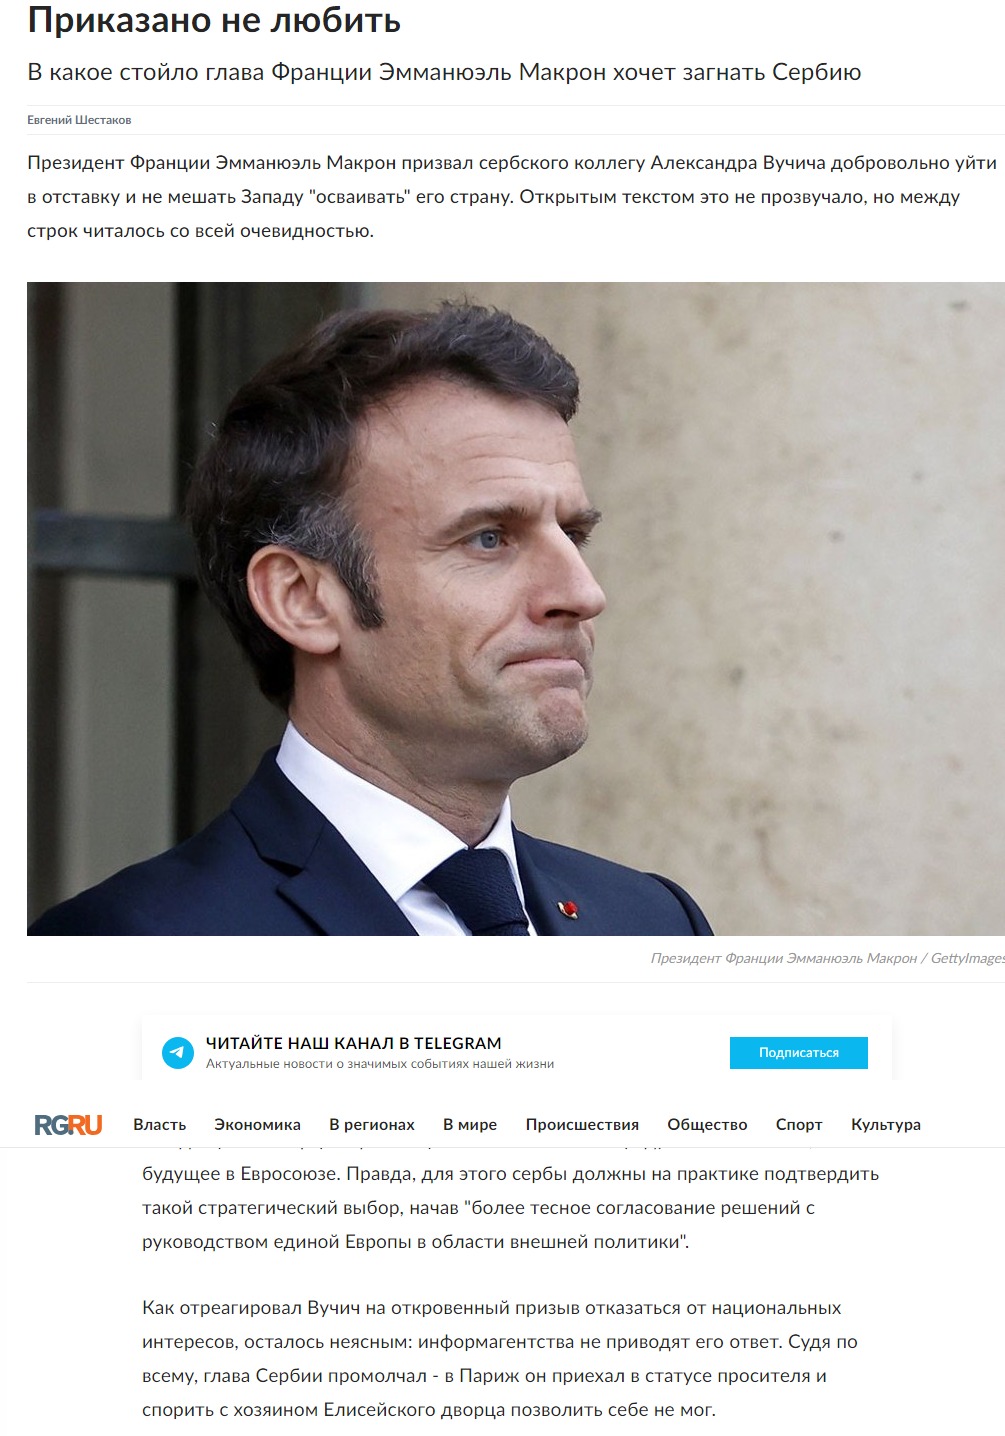 "Vučić je ćutao, došao u Pariz da moli, Makron ga pozvao da podnese ostavku": Ruska Gazeta oštro o predsedniku Srbije 2